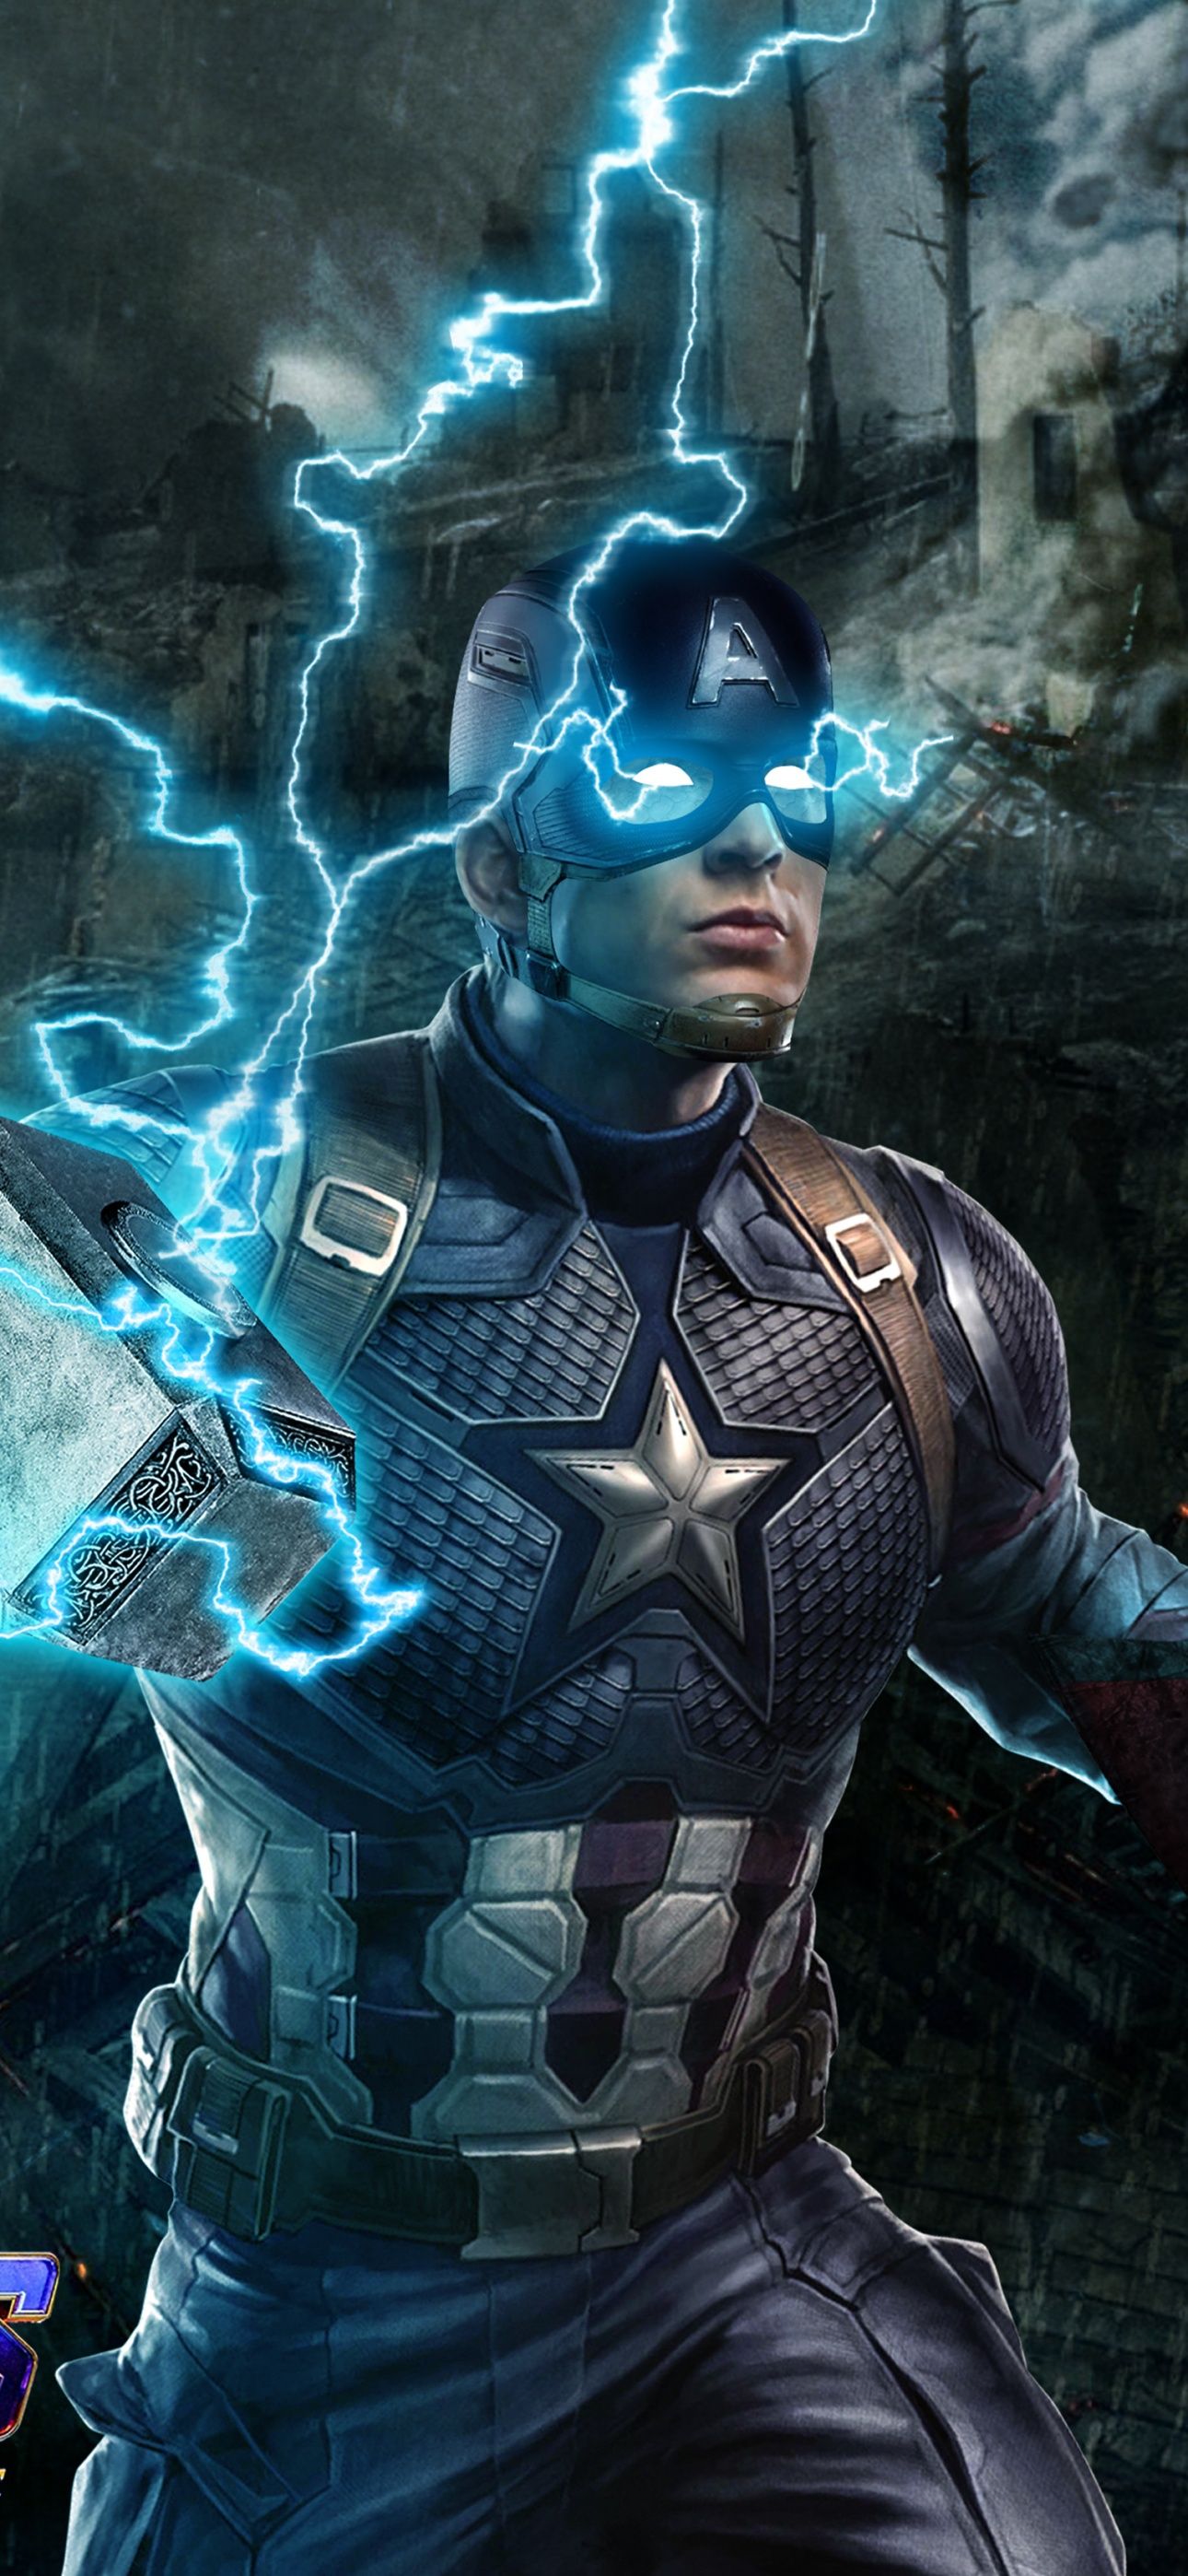 Captain America Wallpaper 4K, Avengers: Endgame, Movies